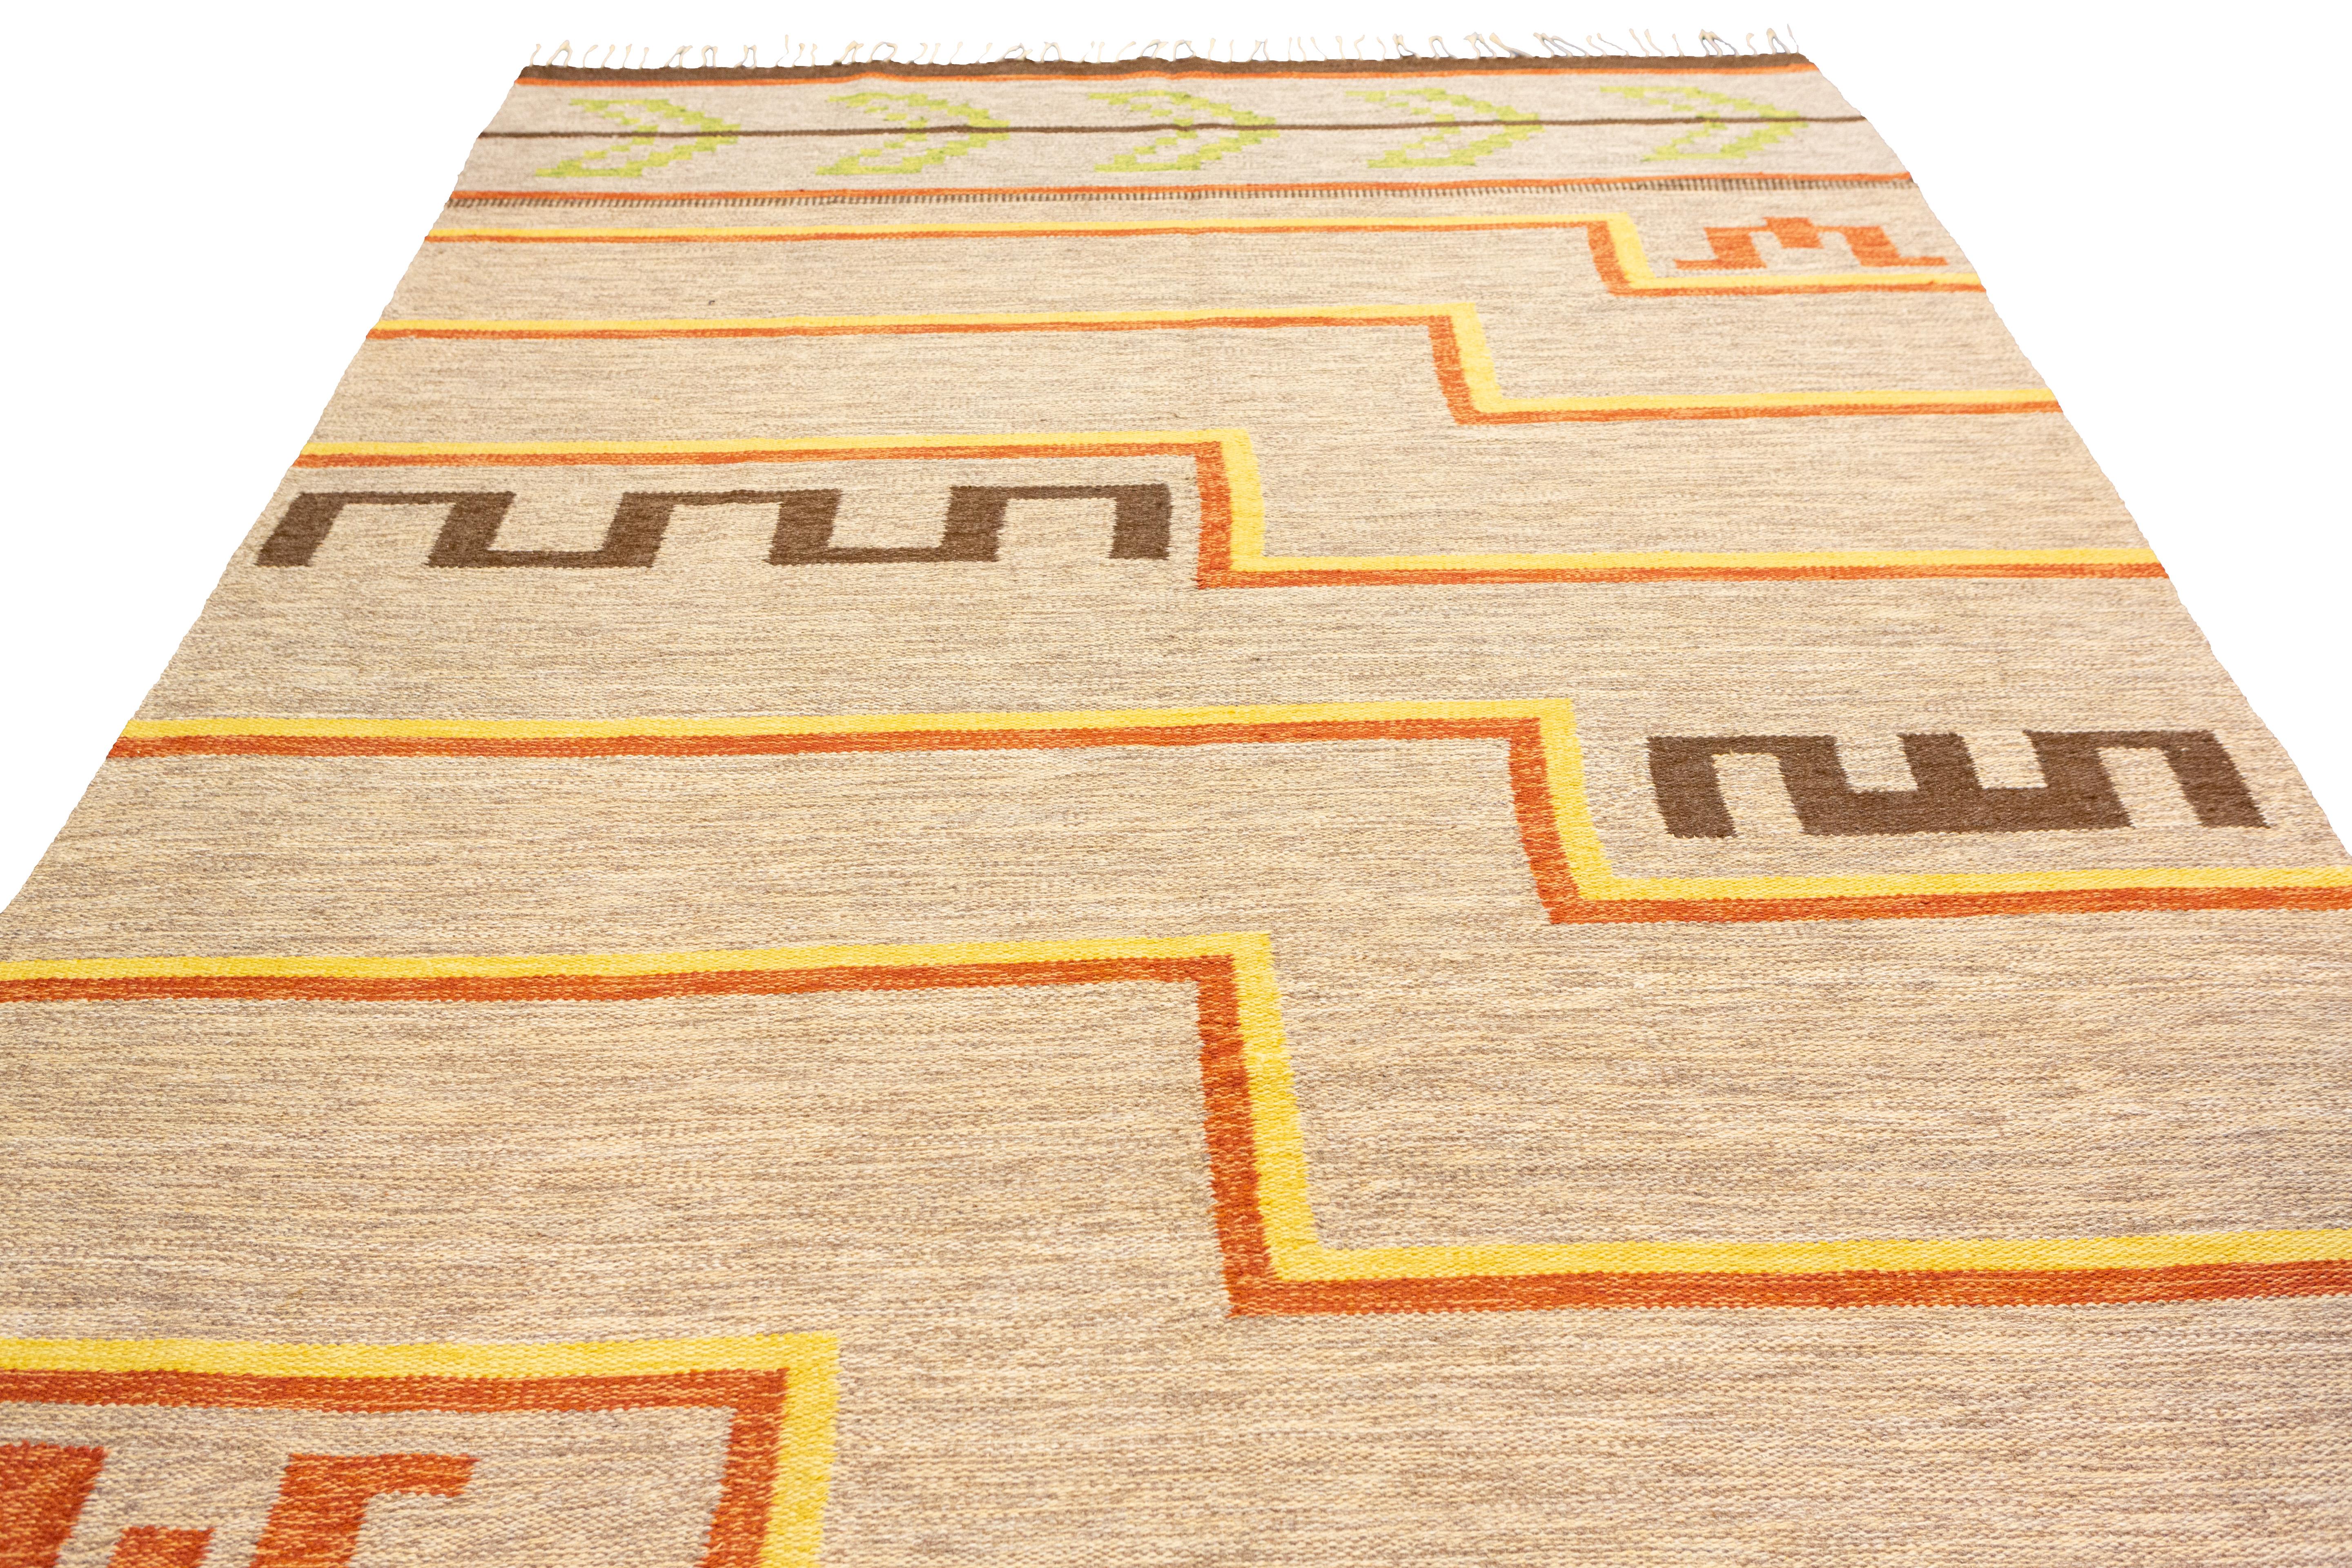 Dies ist ein wirklich einzigartiger skandinavischer Rollakan-Schwedenteppich in einer fesselnden Kombination aus Beige- und Cremefarben. Dieses exquisite Stück zeichnet sich durch sein unverwechselbares Design, seine außergewöhnliche Handwerkskunst